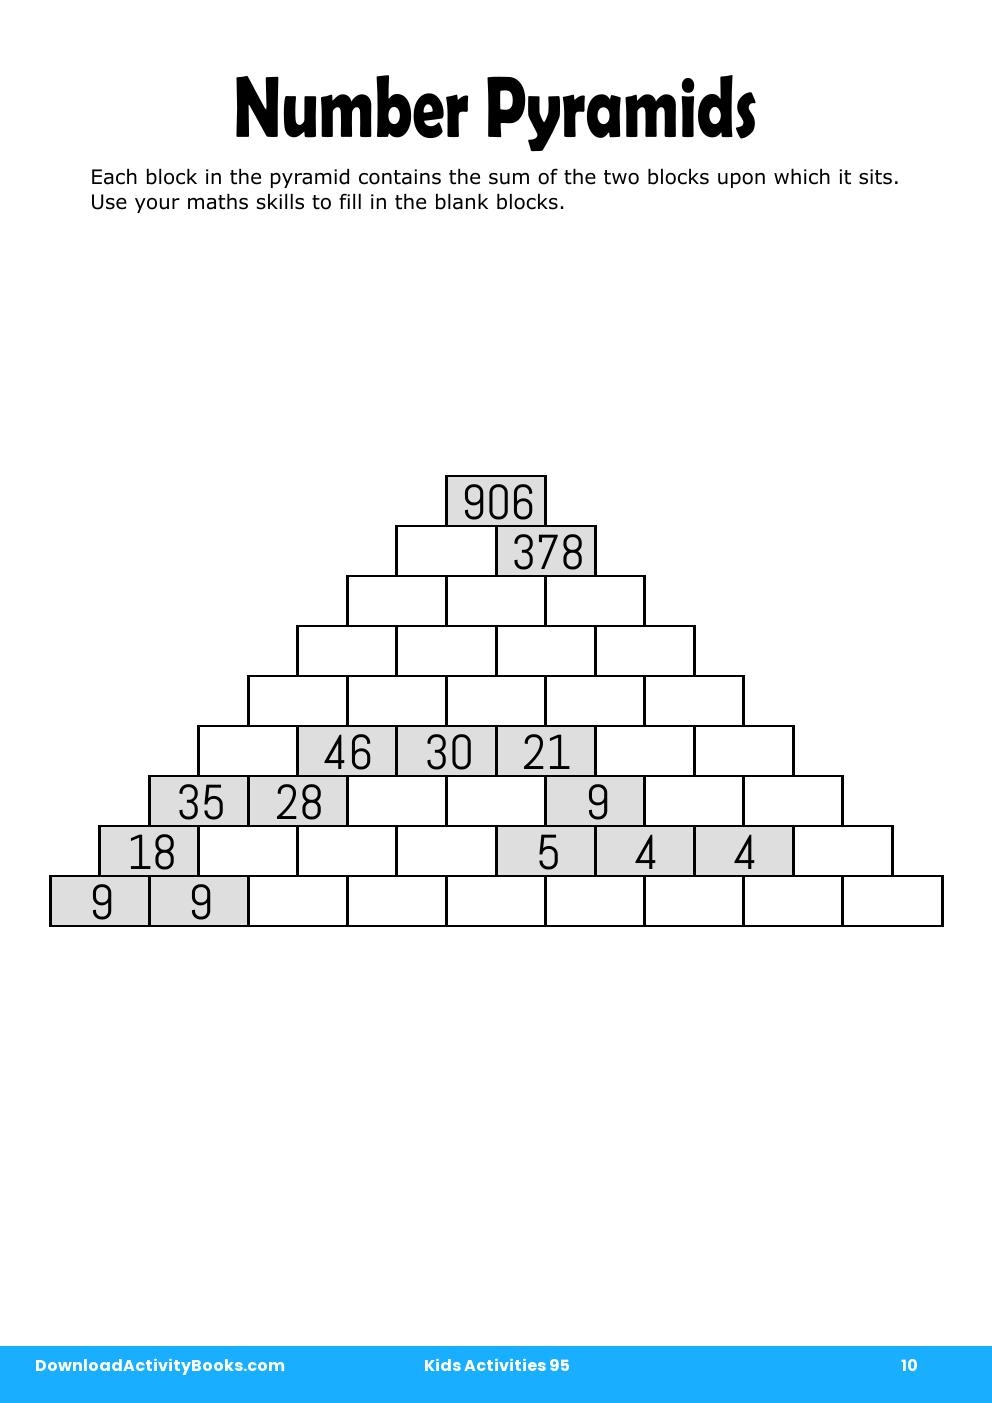 Number Pyramids in Kids Activities 95